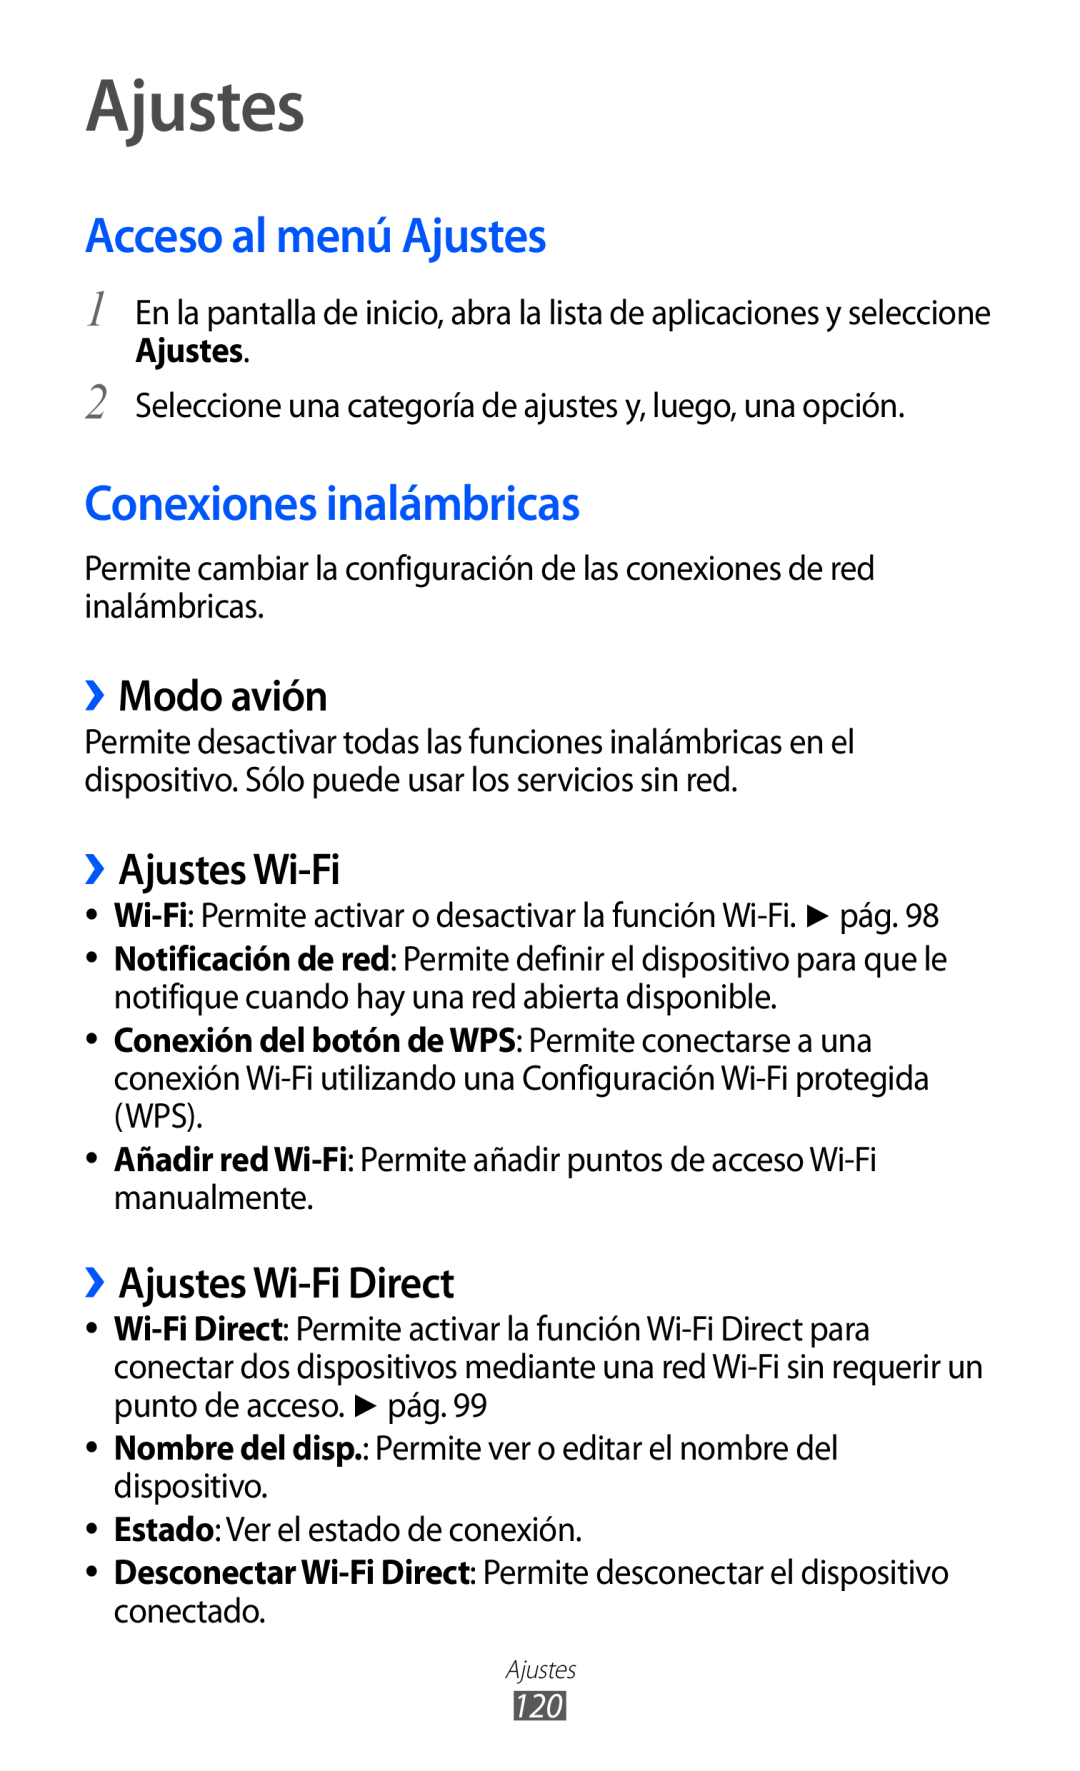 Samsung GT-S6500XKAAMN, GT-S6500RWDTMN Acceso al menú Ajustes, Conexiones inalámbricas, ››Modo avión, ››Ajustes Wi-Fi 